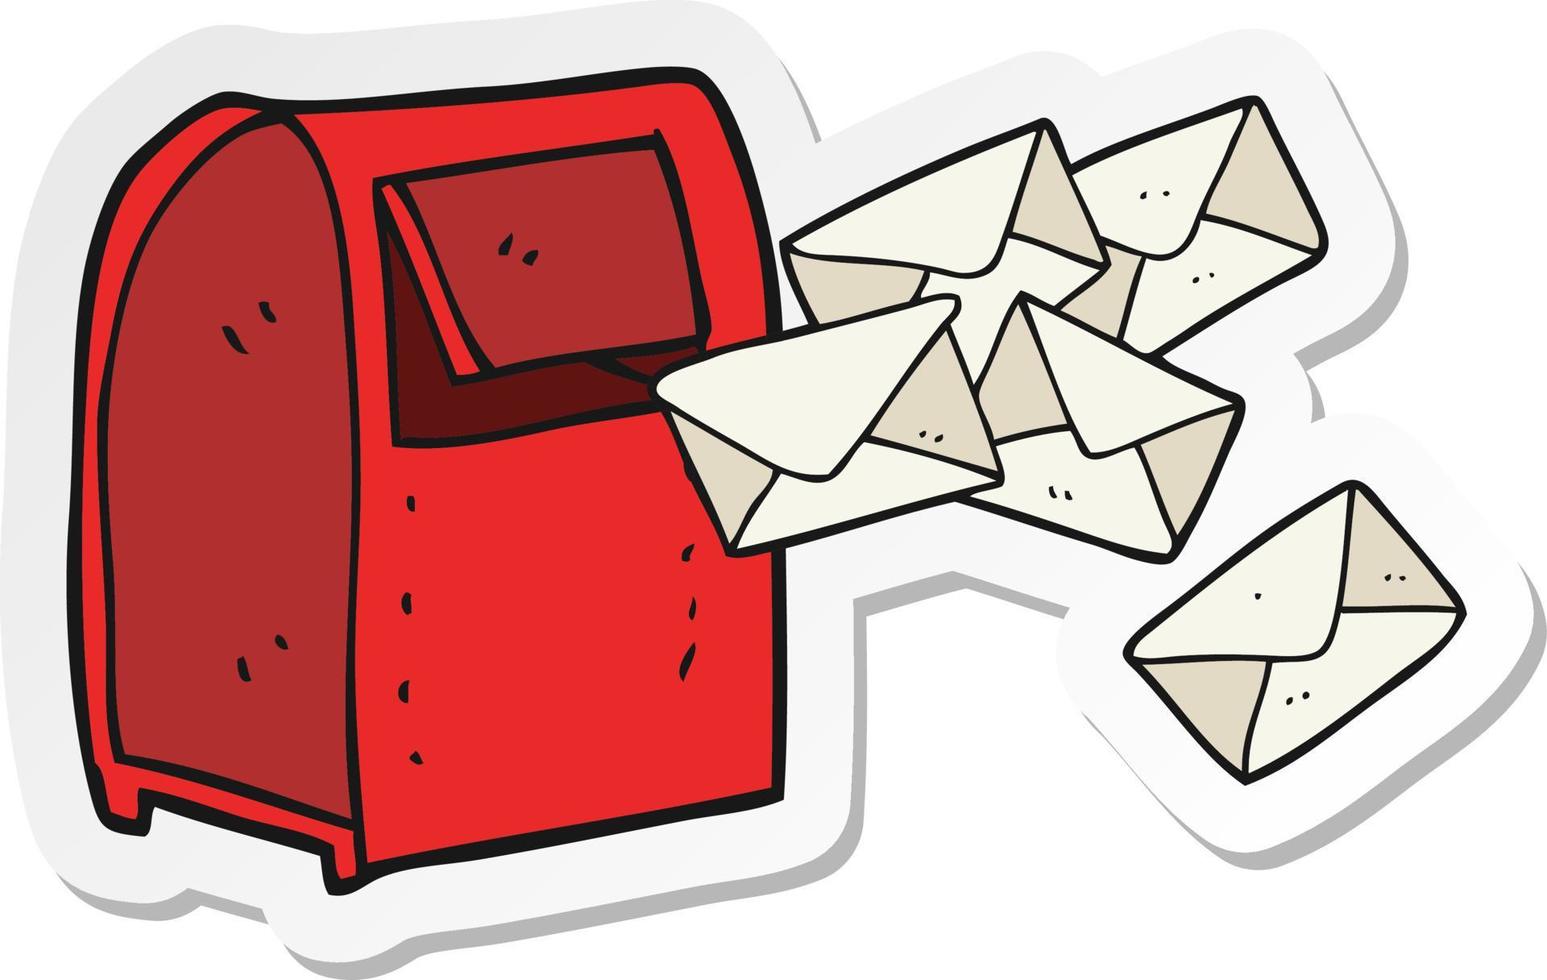 adesivo de uma caixa de correio de desenho animado vetor